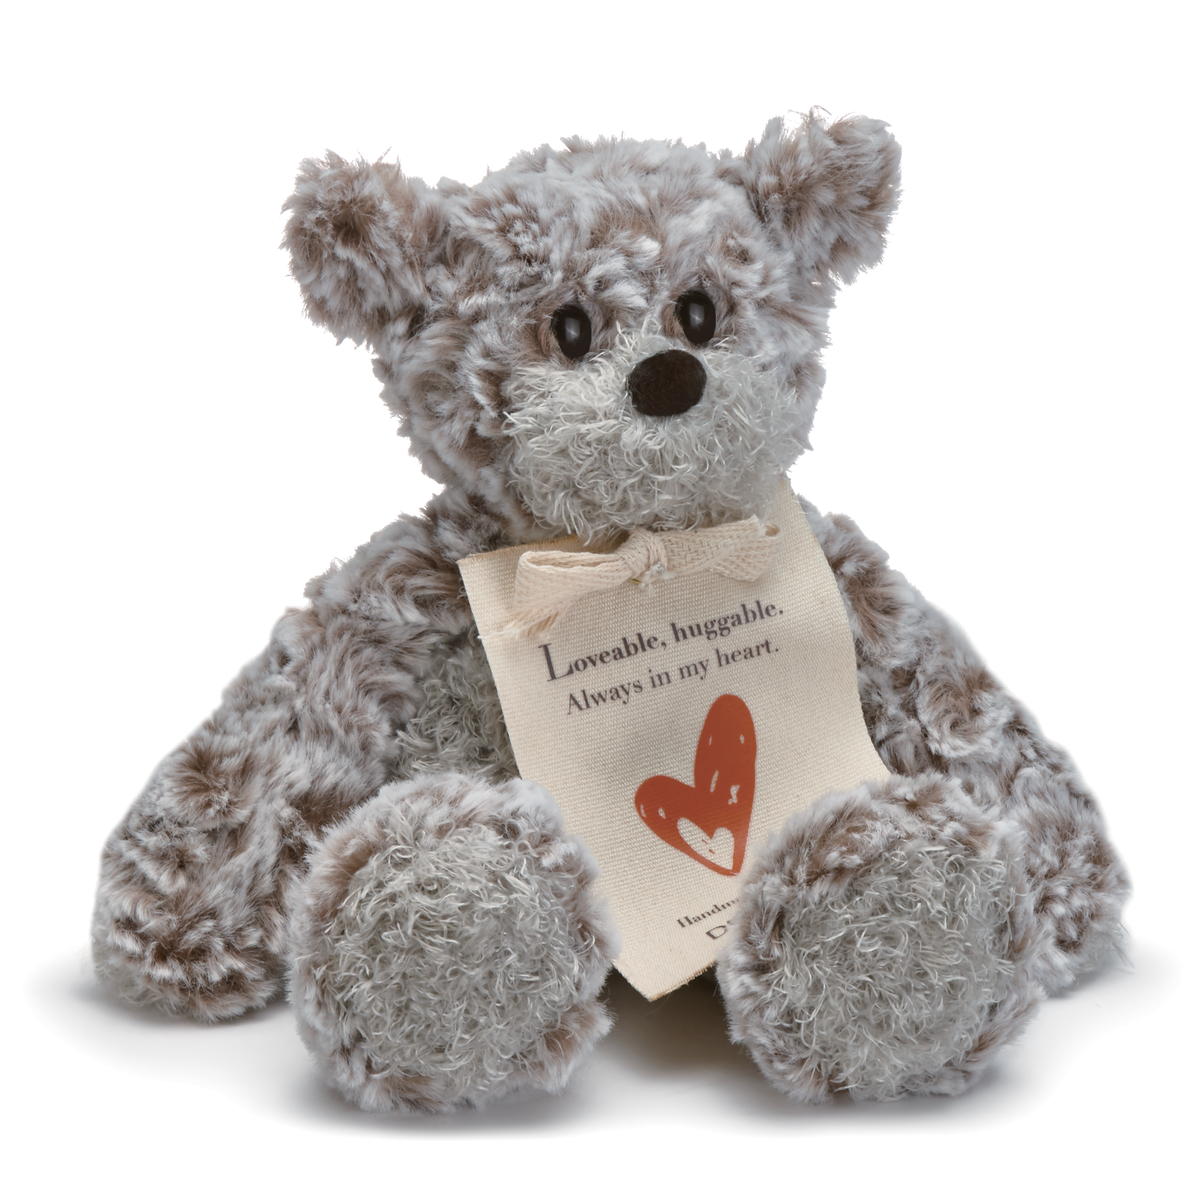 Mini Giving Bear 8.5" - Hero - Stuffed Animal